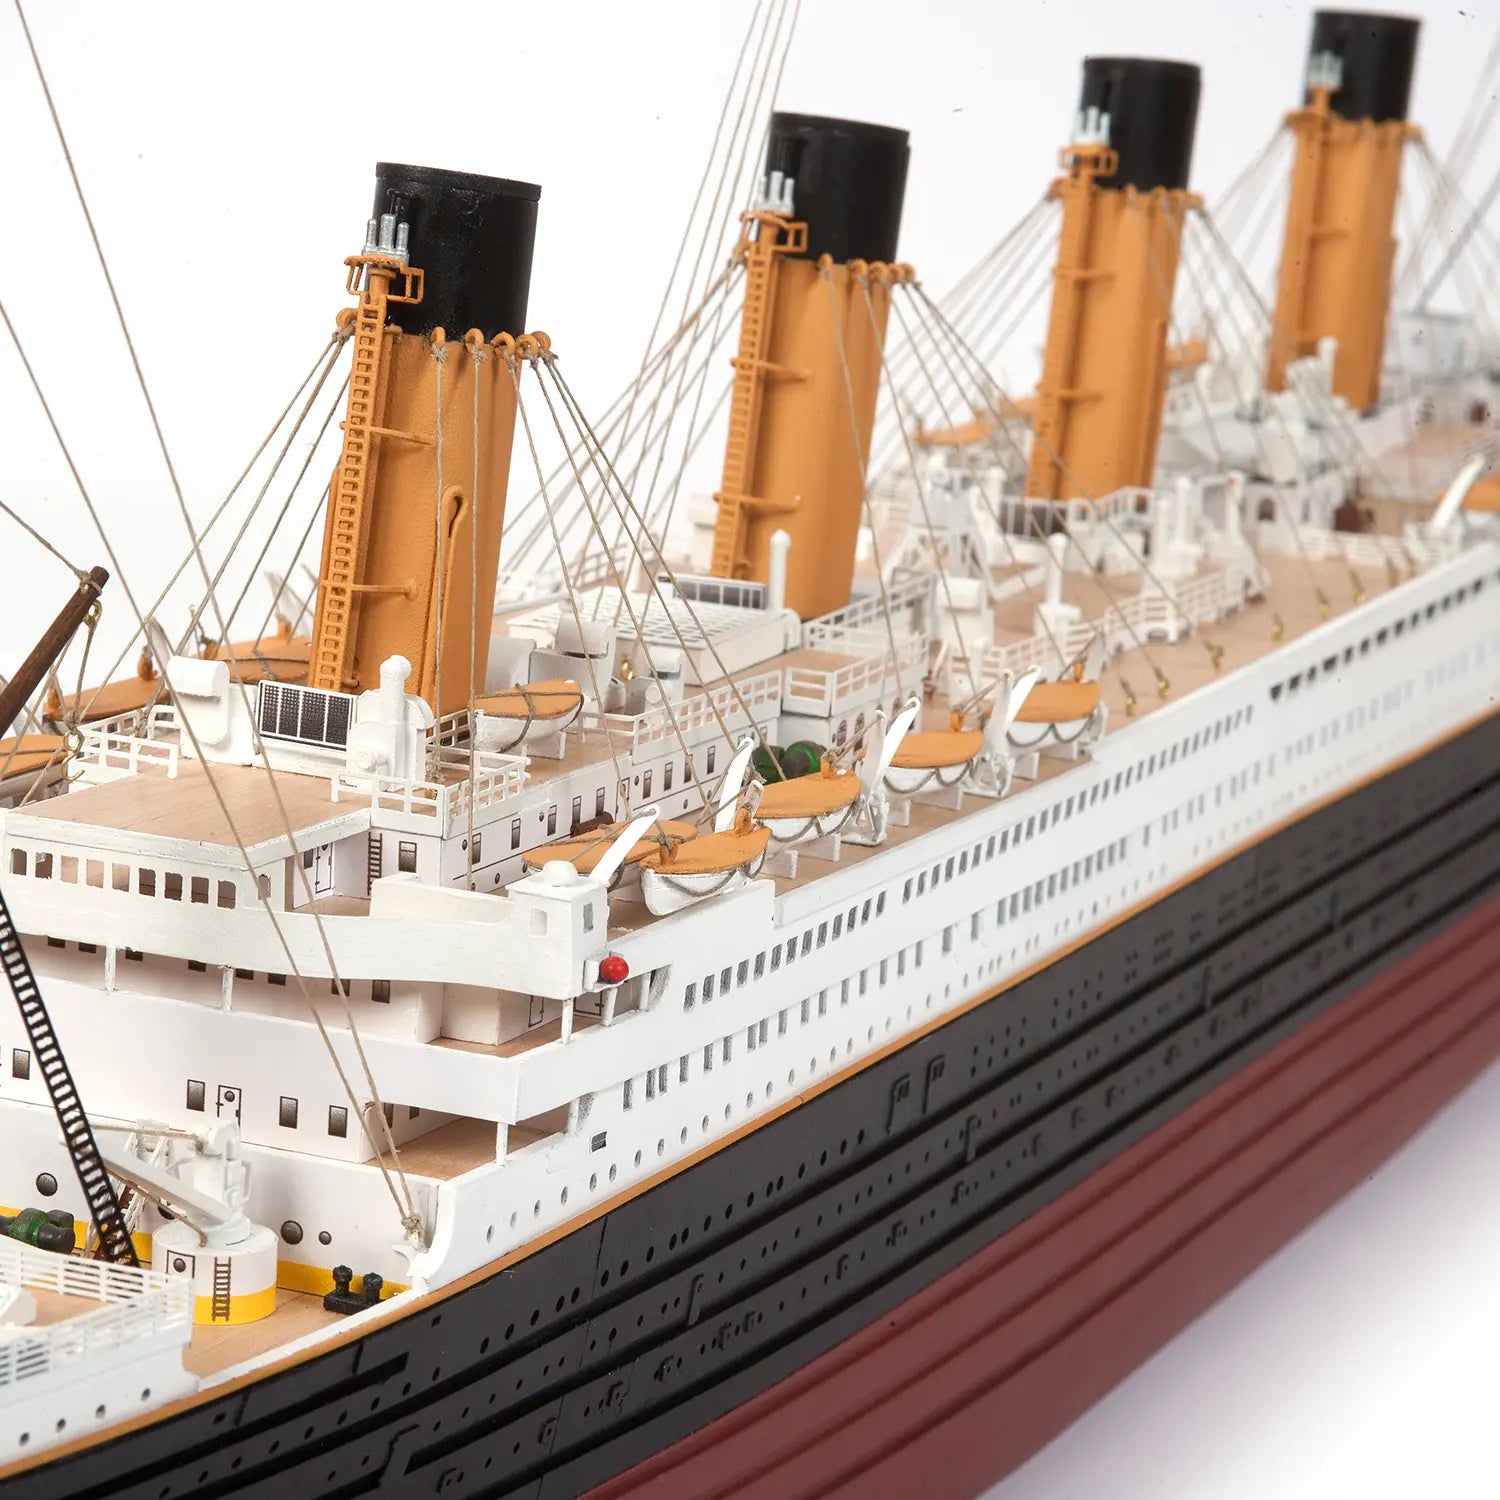 Maquetas Titanic - MUNDO TITANIC